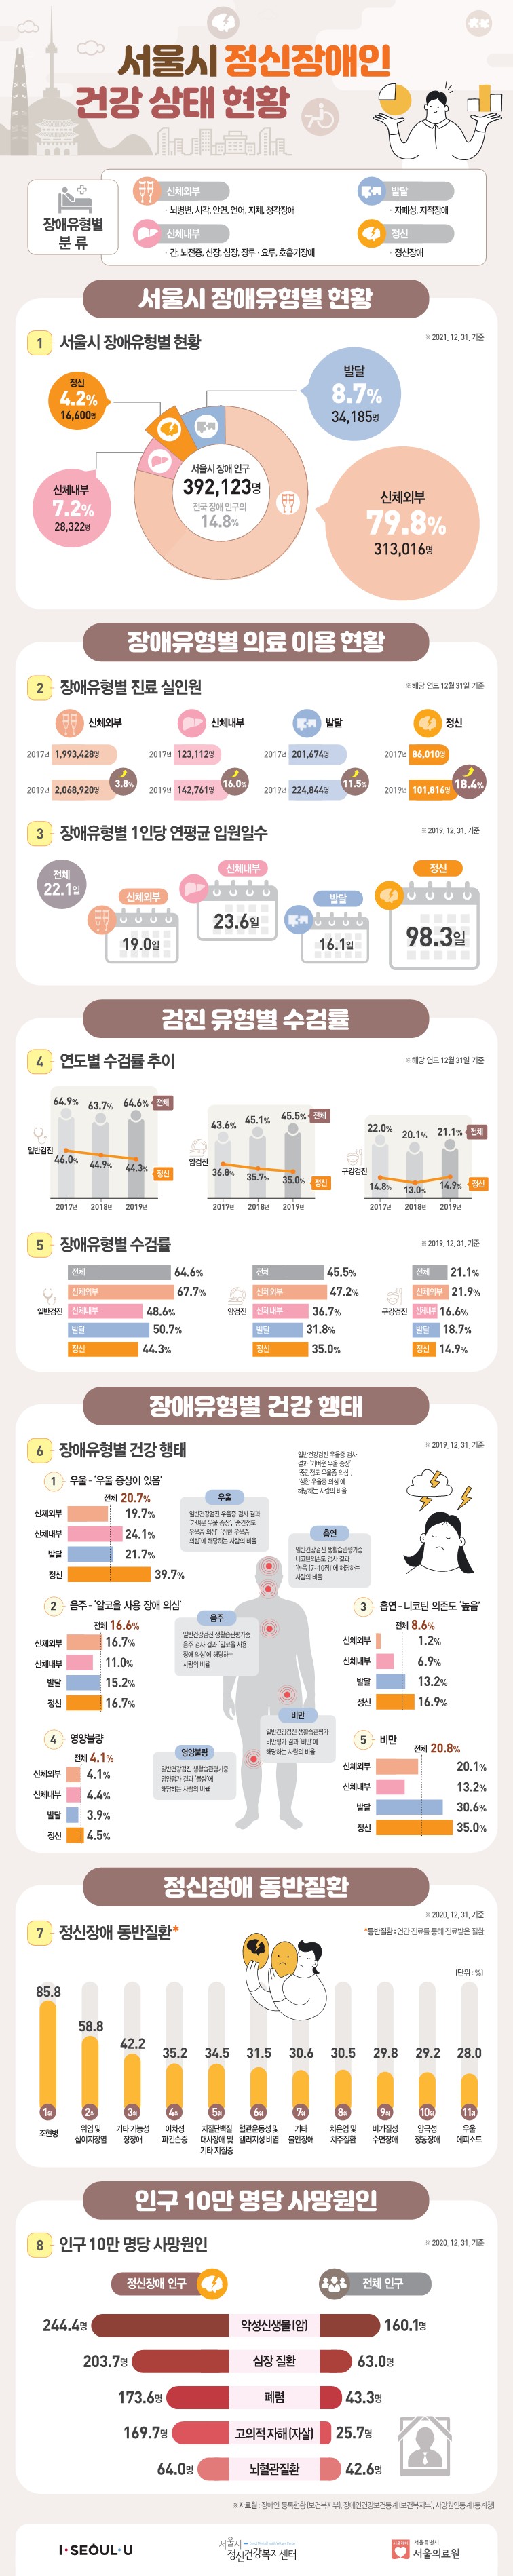 [인포그래픽] 서울시 정신장애인 건강상태 현황